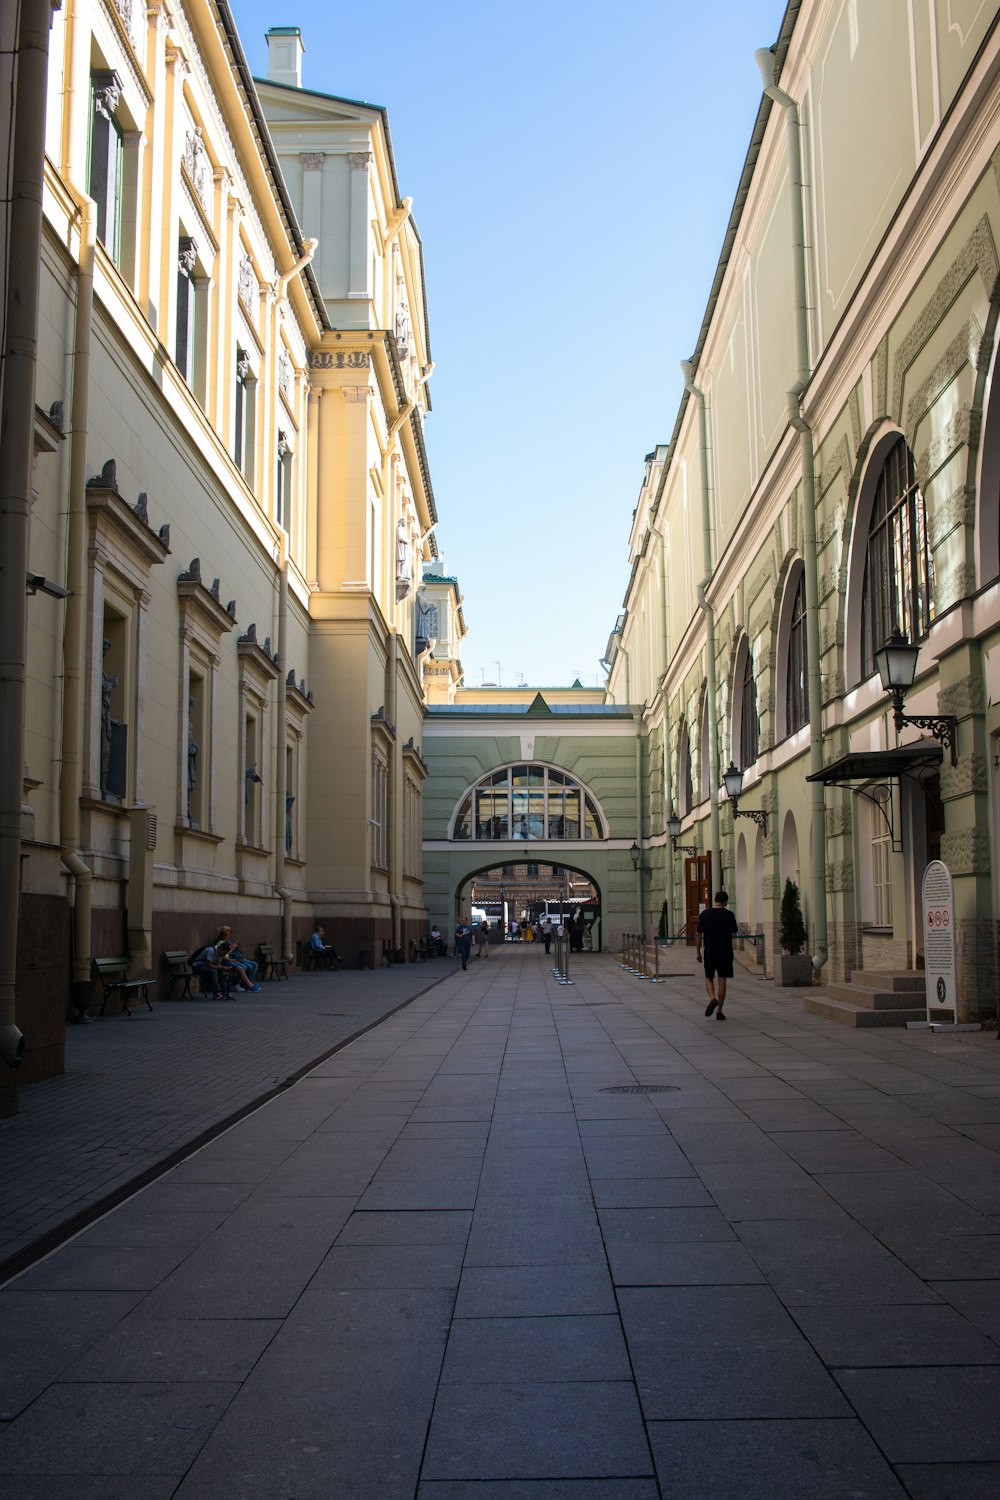 people walking on sidewalk in between buildings during daytime